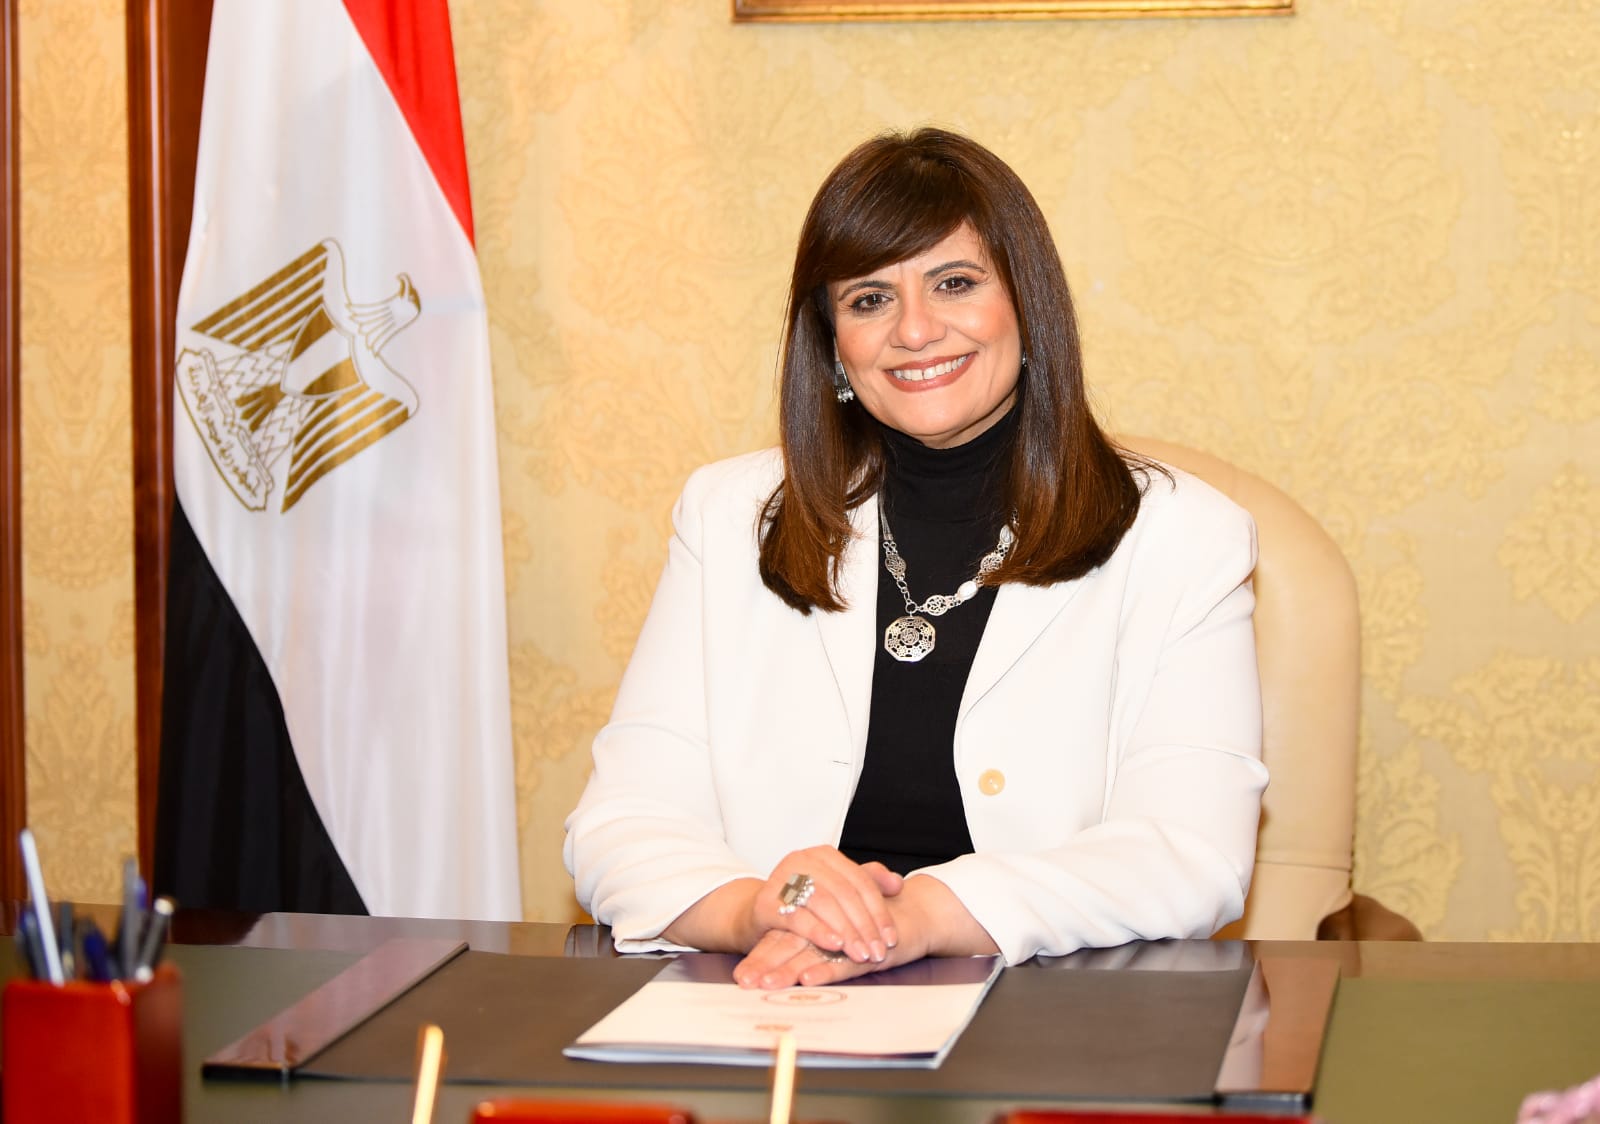 وزيرة الهجرة: نعمل على تحقيق مصلحة المصريين بالخارج بمختلف احتياجاتهم وإزالة أية عقبات تواجههم